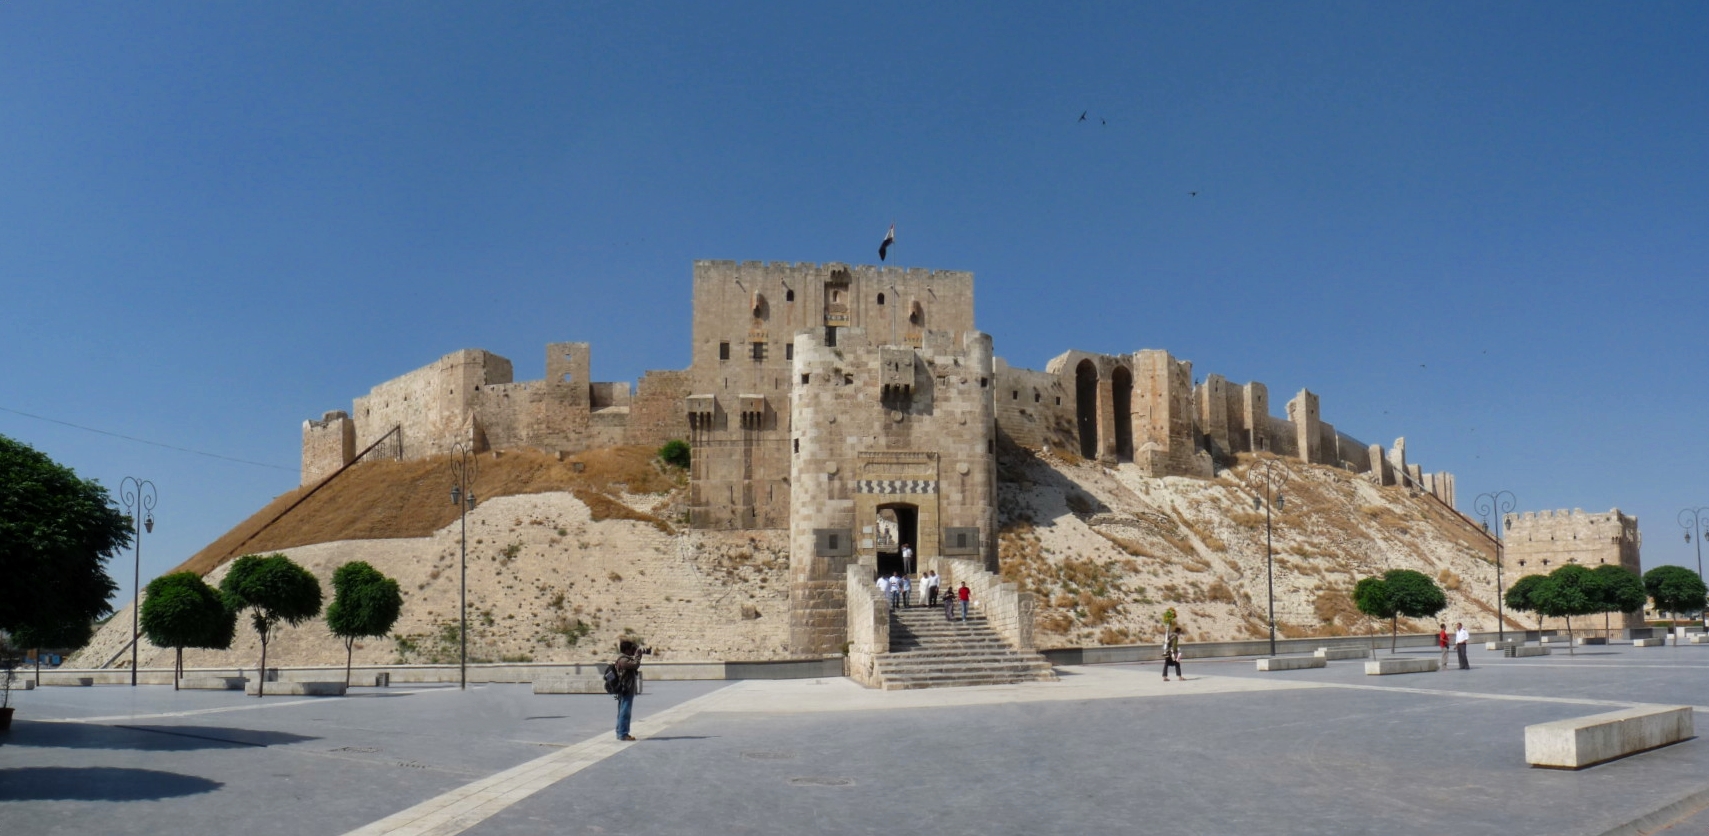 Citadel at Aleppo